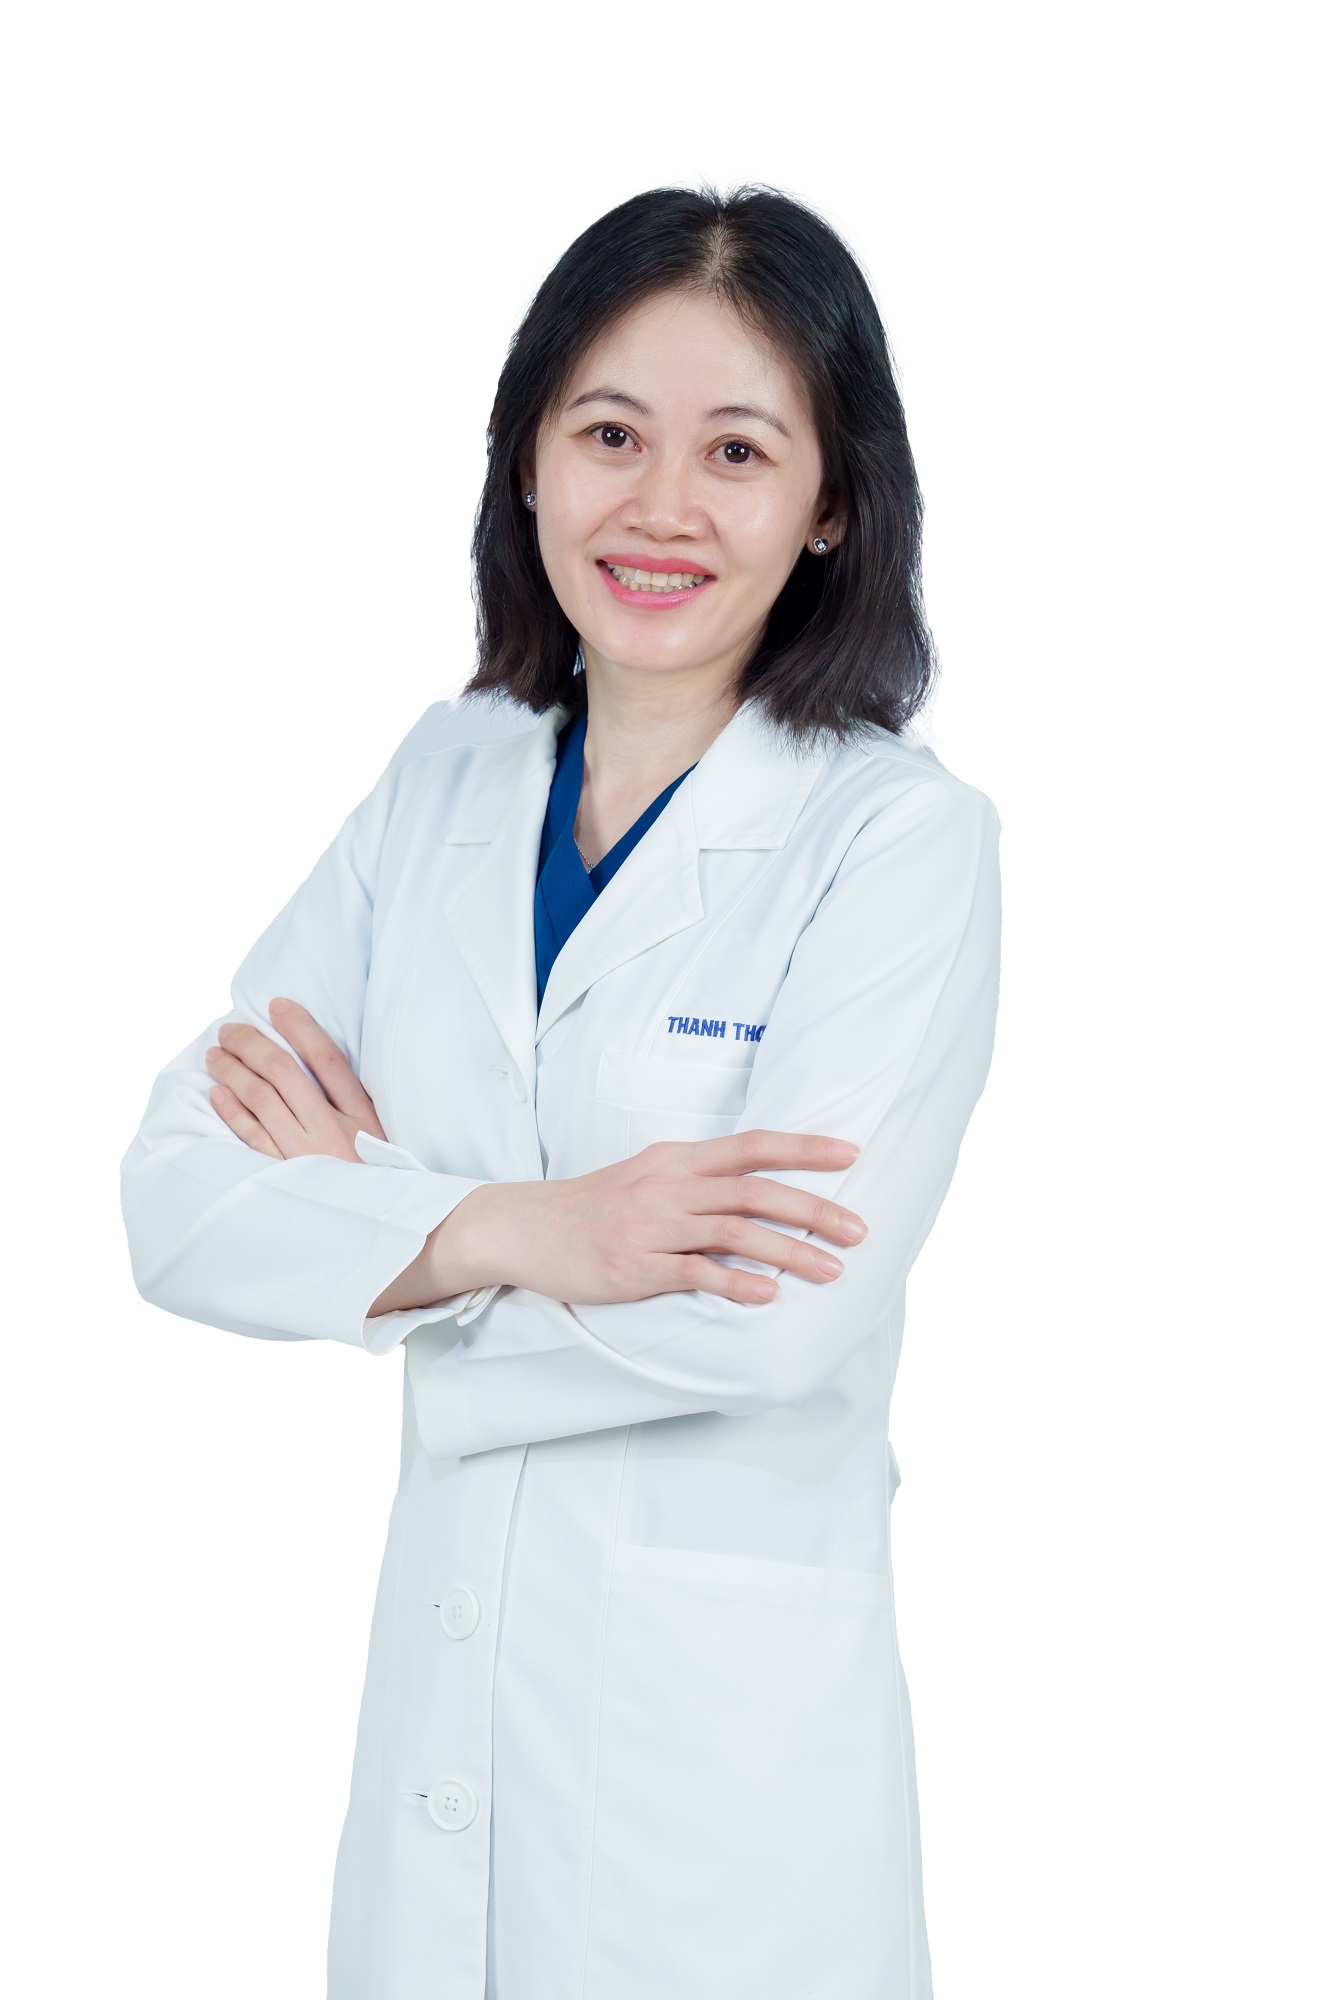 Bác sĩ Tạ Thụy Thanh Thơ